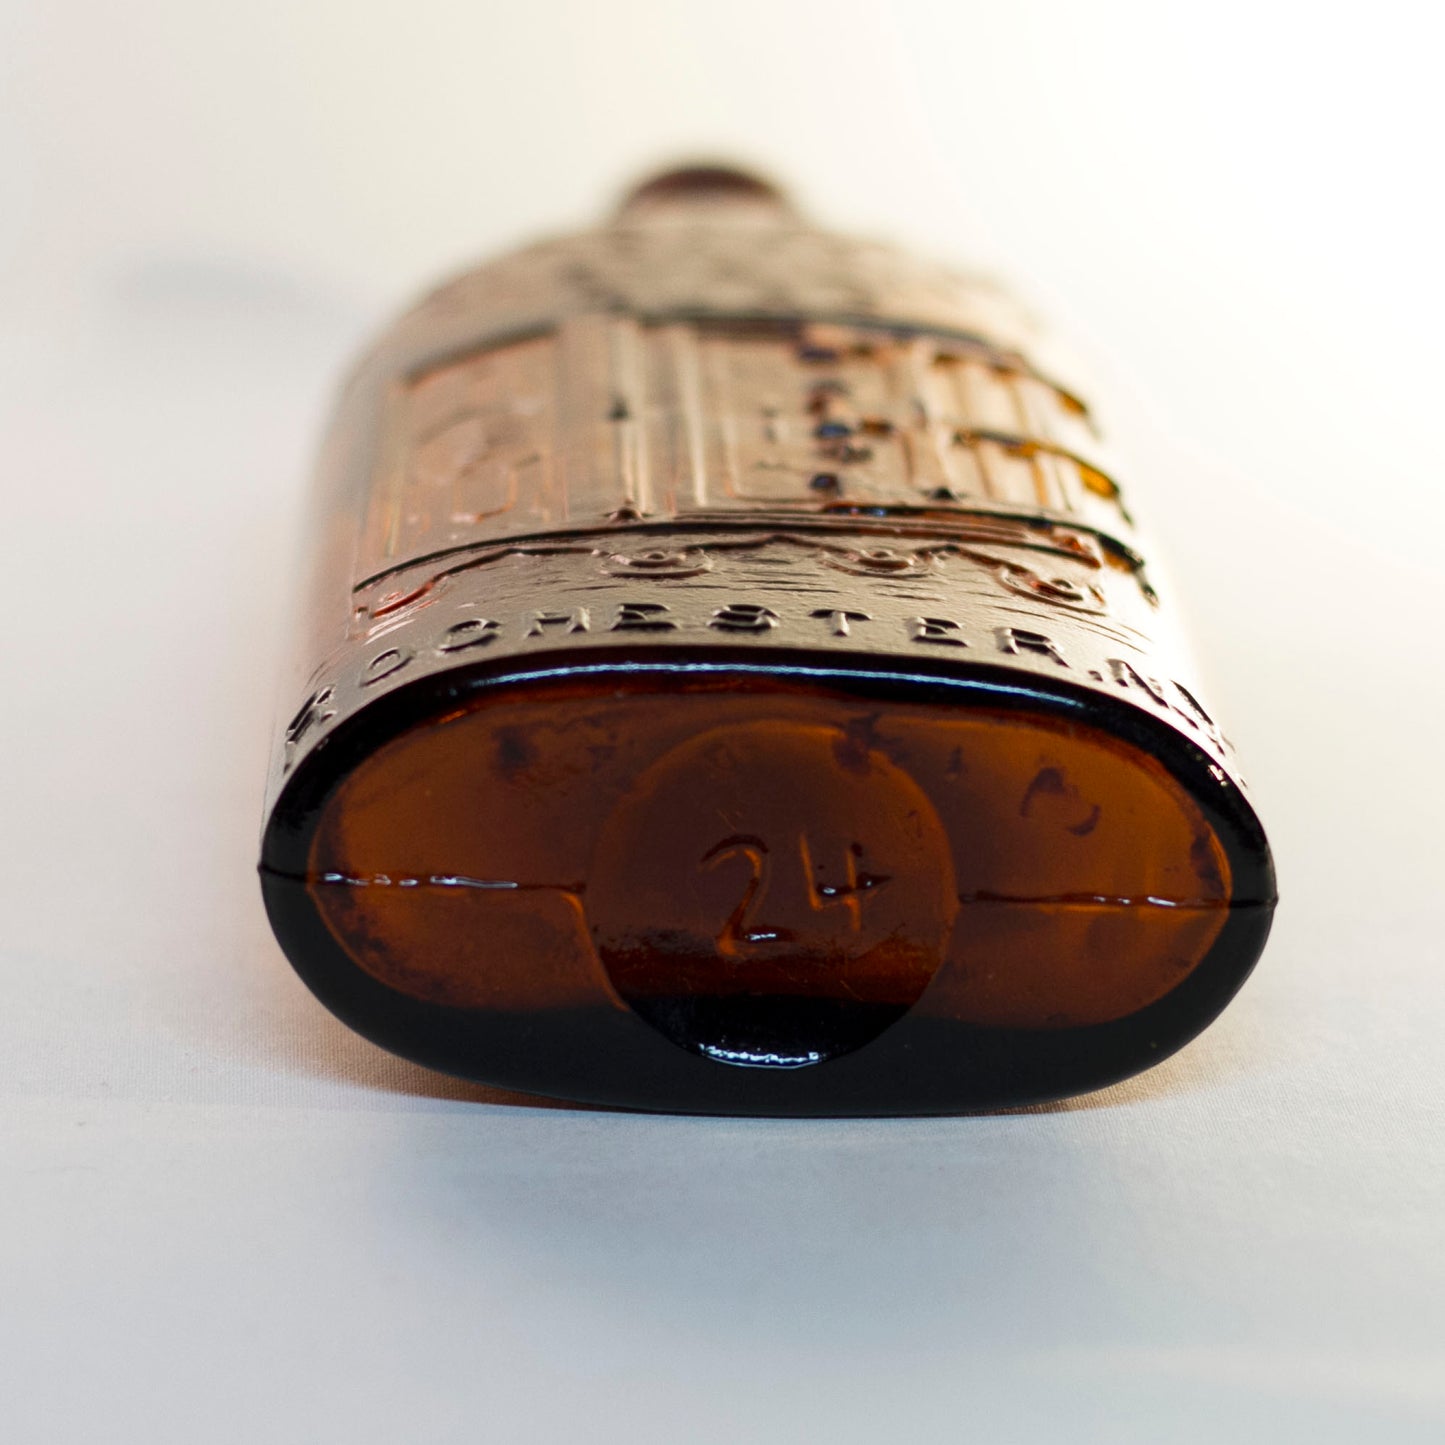 Antique WARNER'S SAFE KIDNEY & LIVER CURE Bottle in Amber Glass Circa 1880s